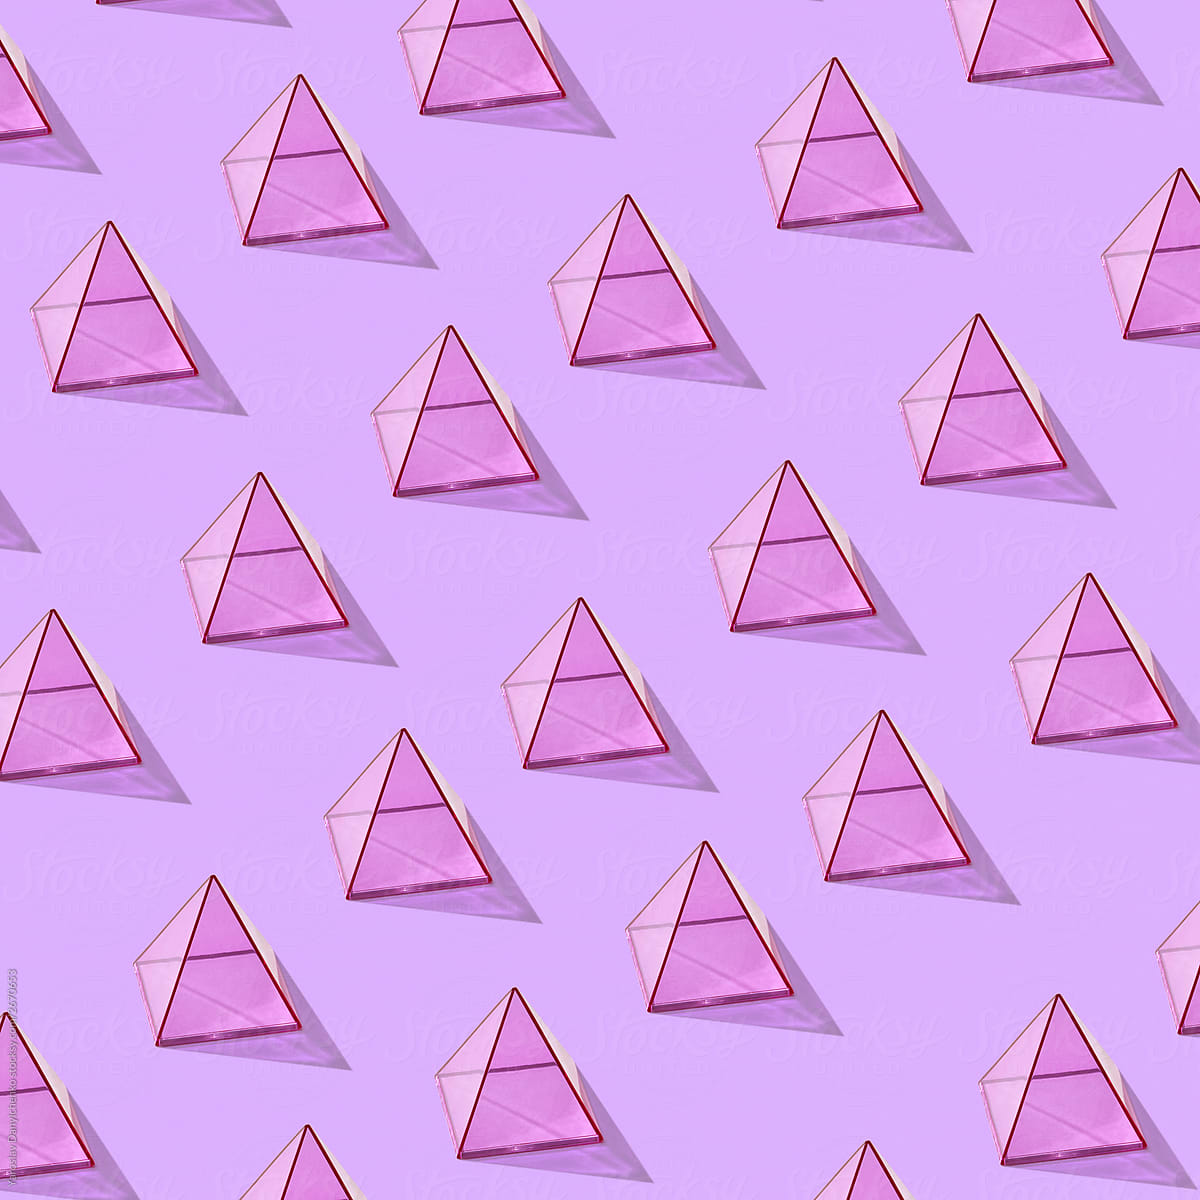 Rows of purple pyramids